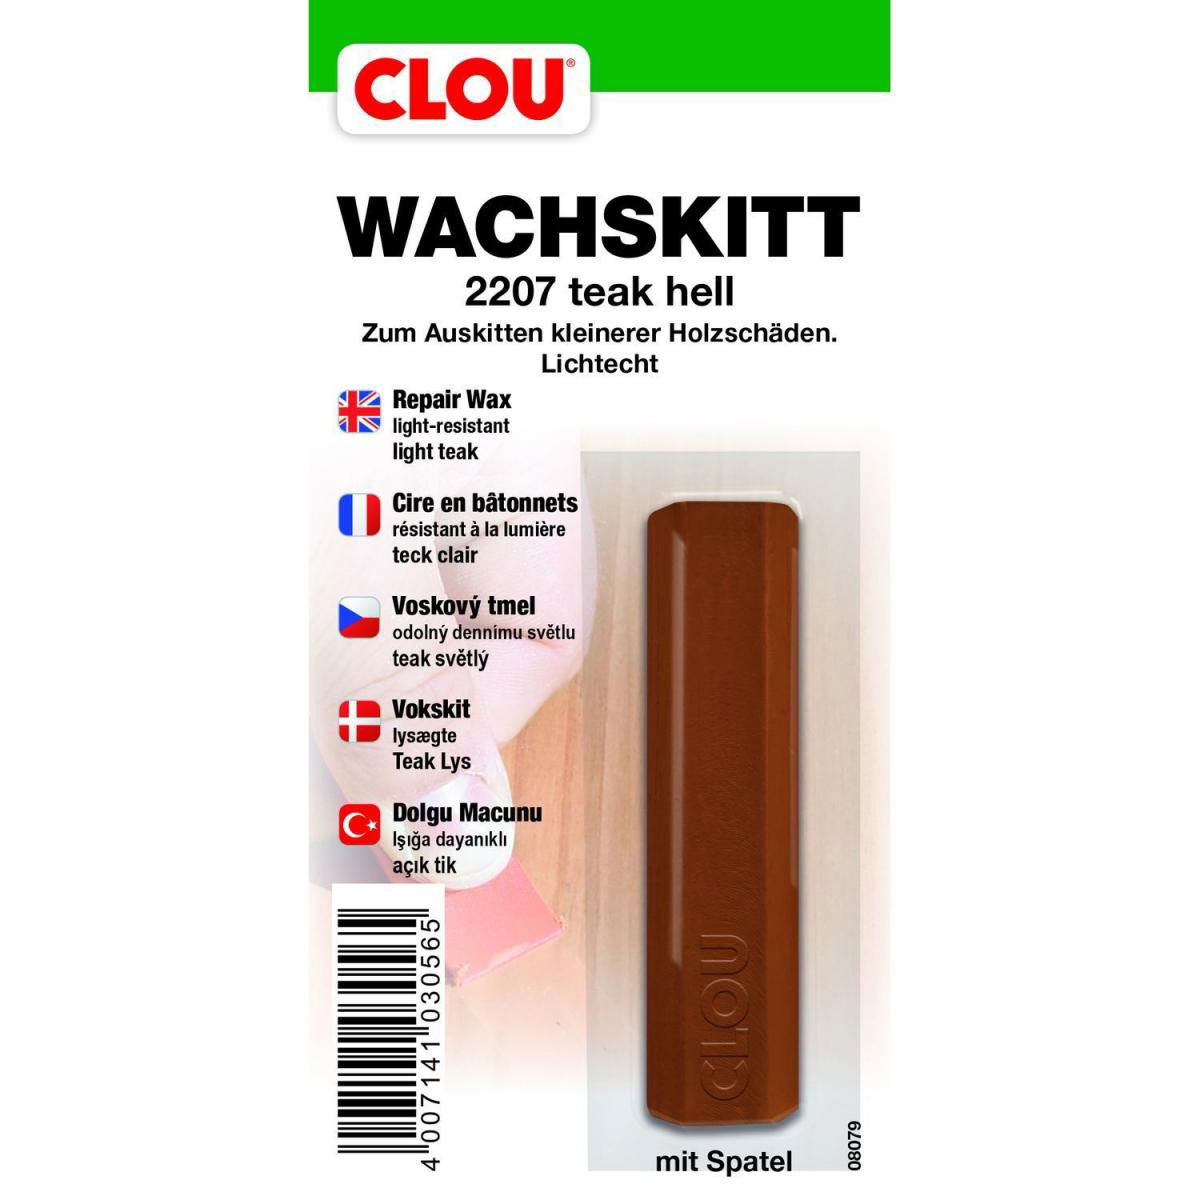 Clou Wachskitt „Teak hell“